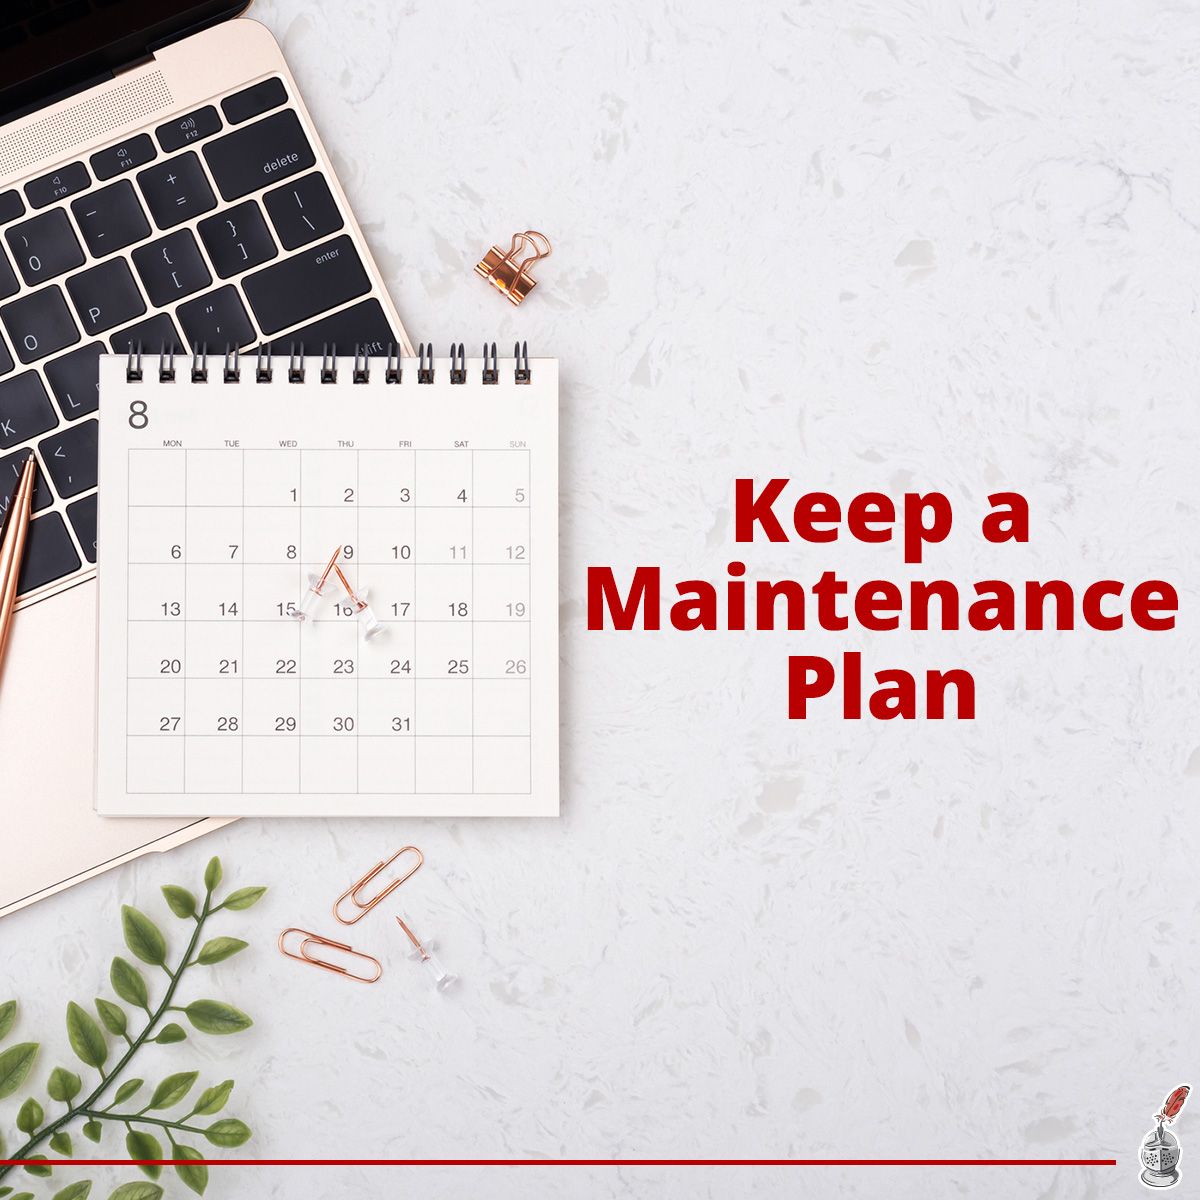 Keep a Maintenance Plan